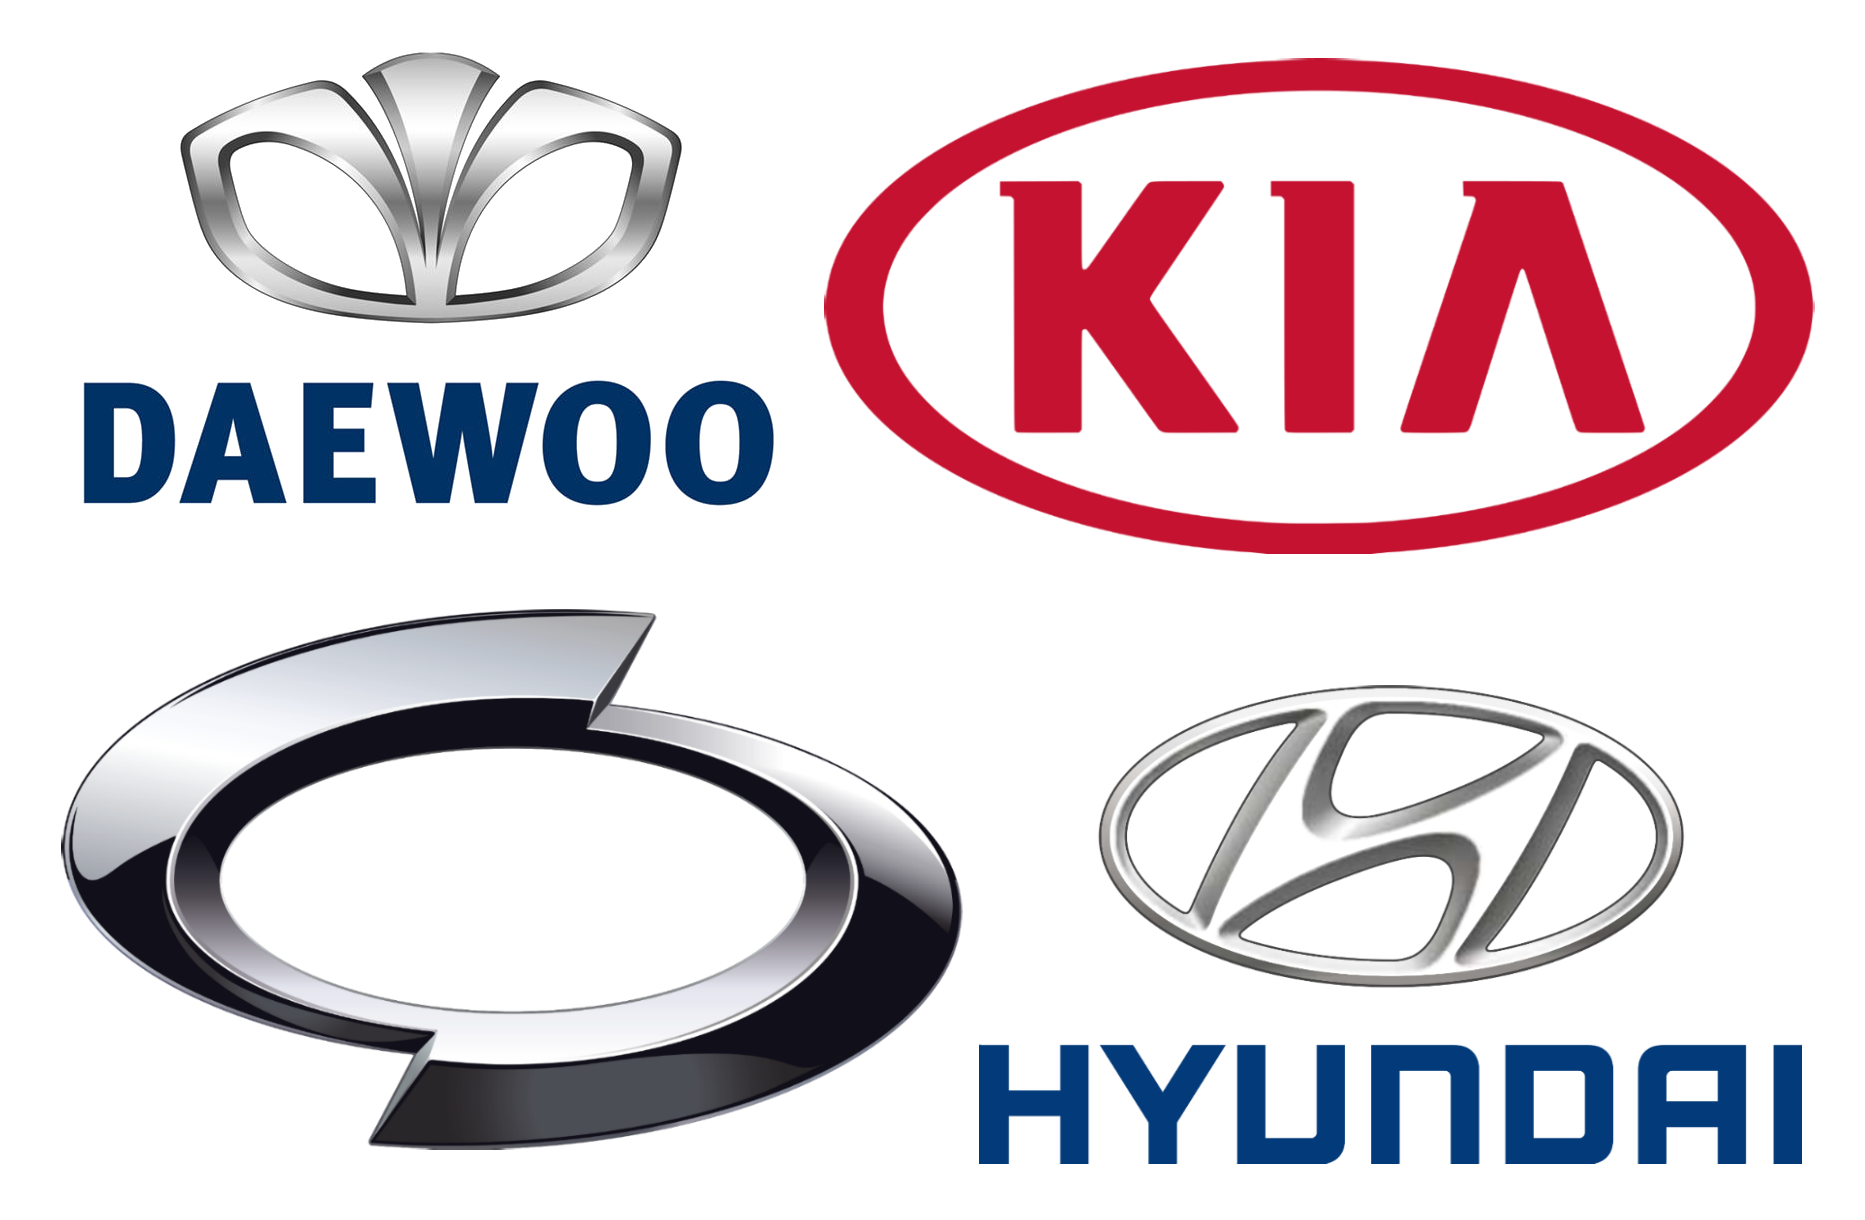 Korea Car Company Motors Hyundai Motor Cars Clipart